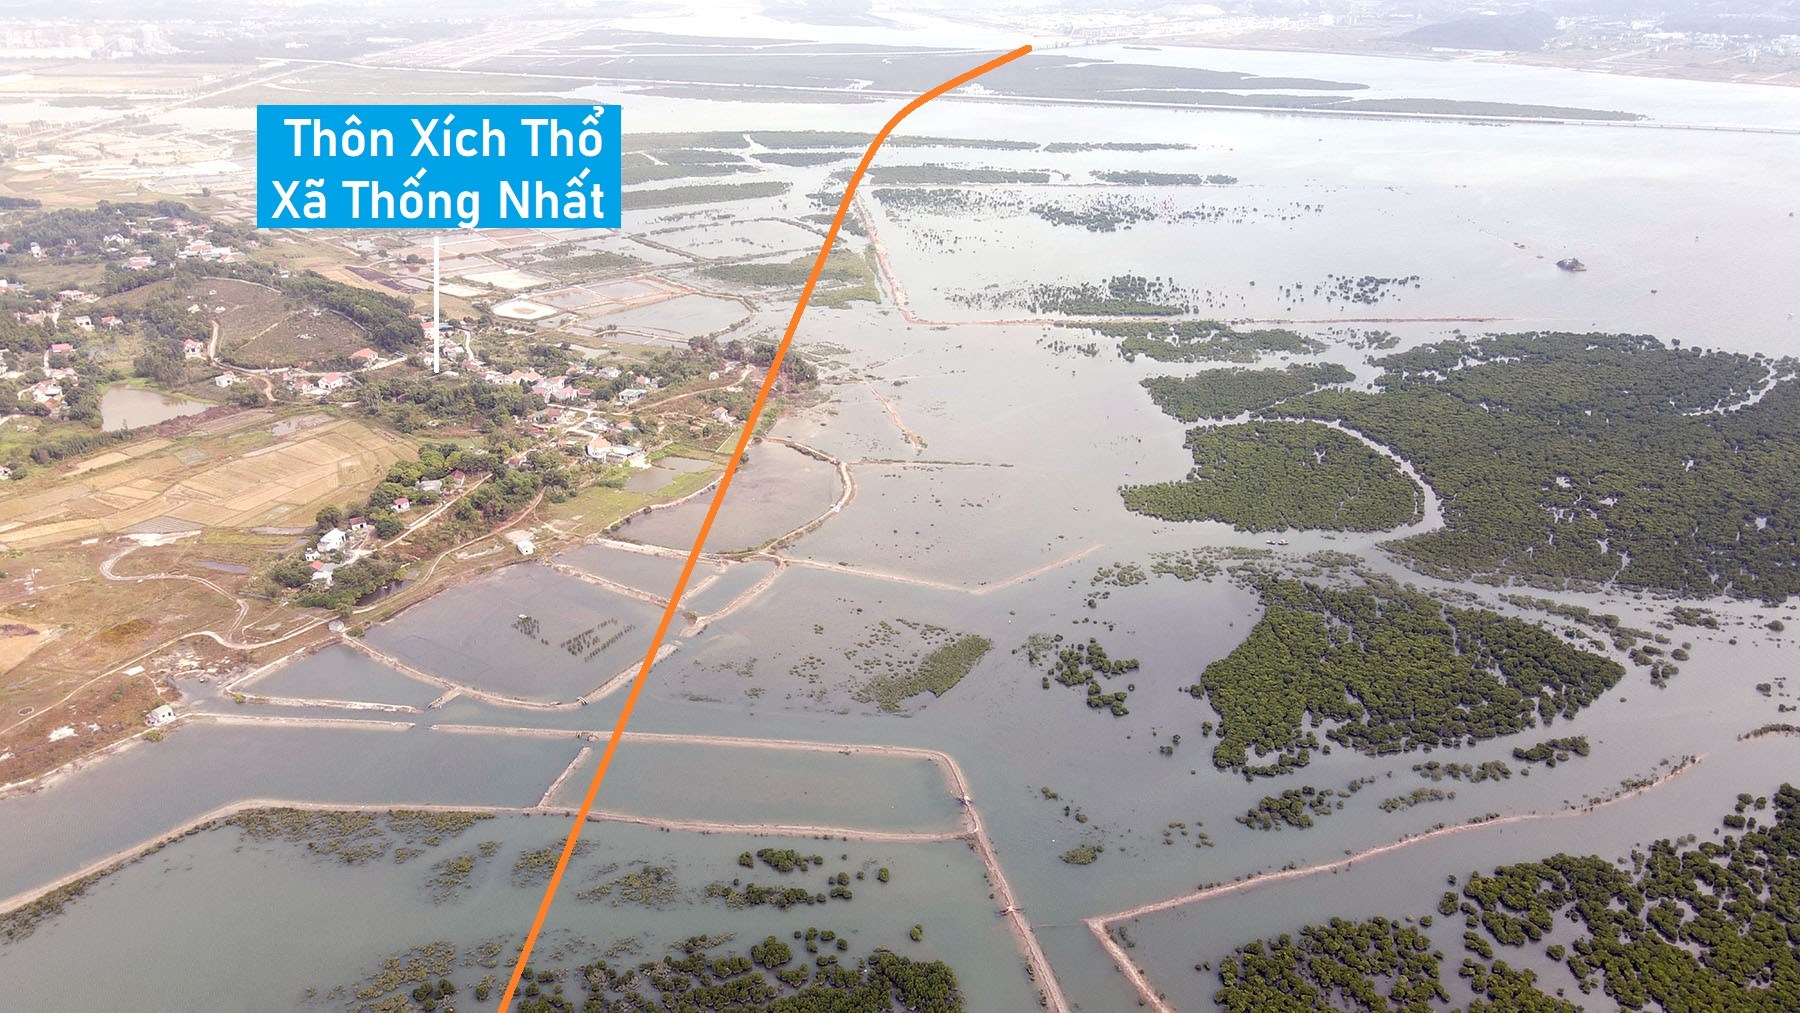 Toàn cảnh vị trí sẽ xây cầu vượt vịnh Cửa Lục nối xã Lê Lợi - Thống Nhất, TP Hạ Long, Quảng Ninh